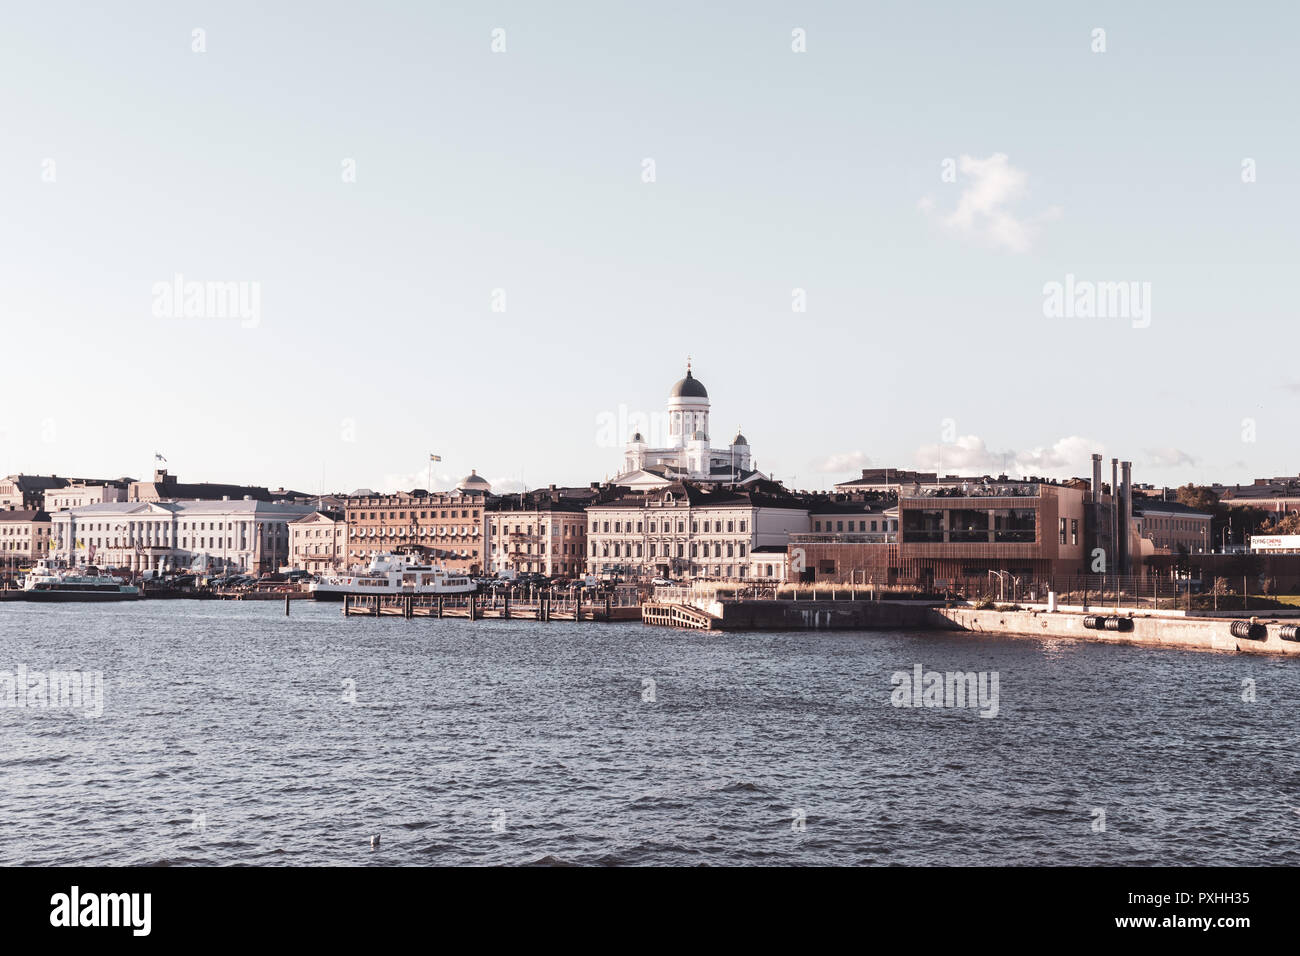 Hafen Helsinki Finlandia mit Blick auf Dom Foto Stock